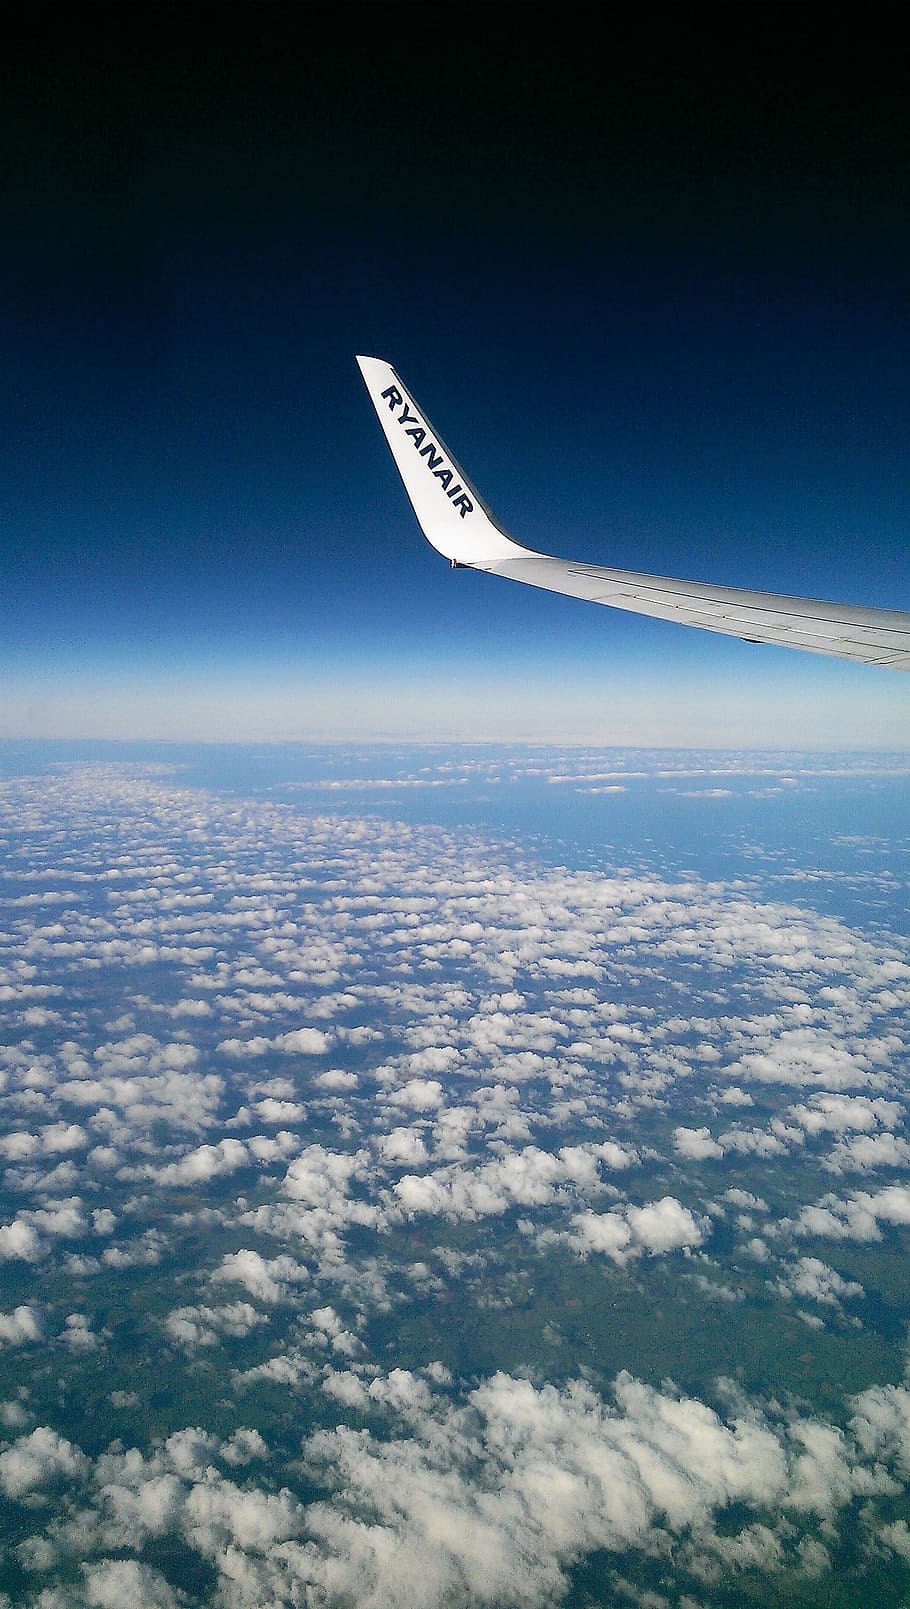 Nube, Winglet, Horizon, Aviones, Europa, Ryanair, Boeing 737, avión, volando, vista aérea